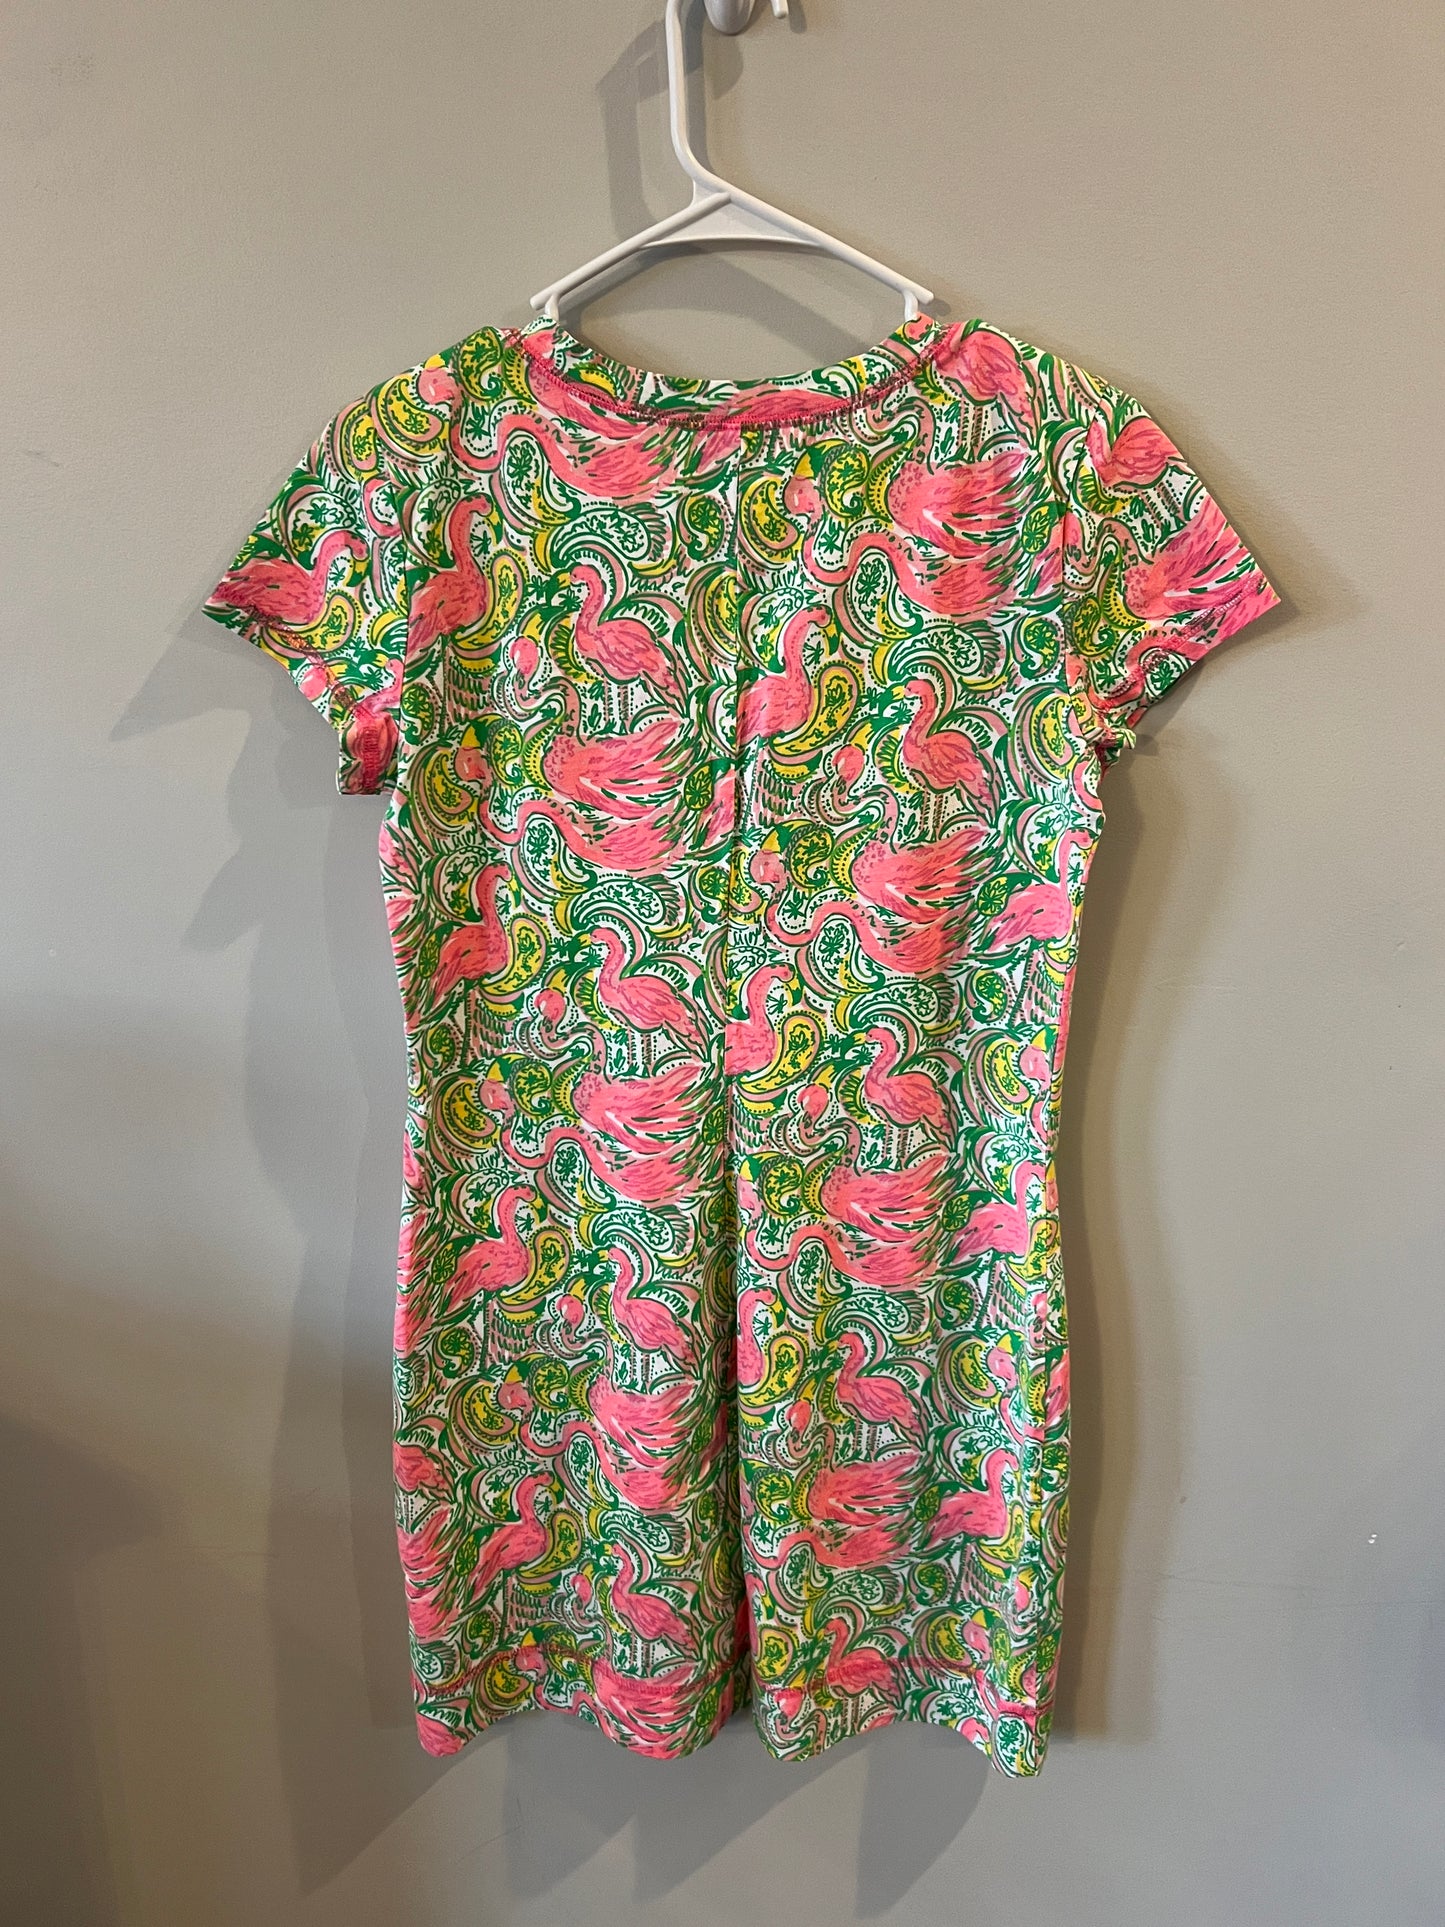 Women’s M Lilly Pulitzer cotton dress- PPU 45044 (Liberty Twp)